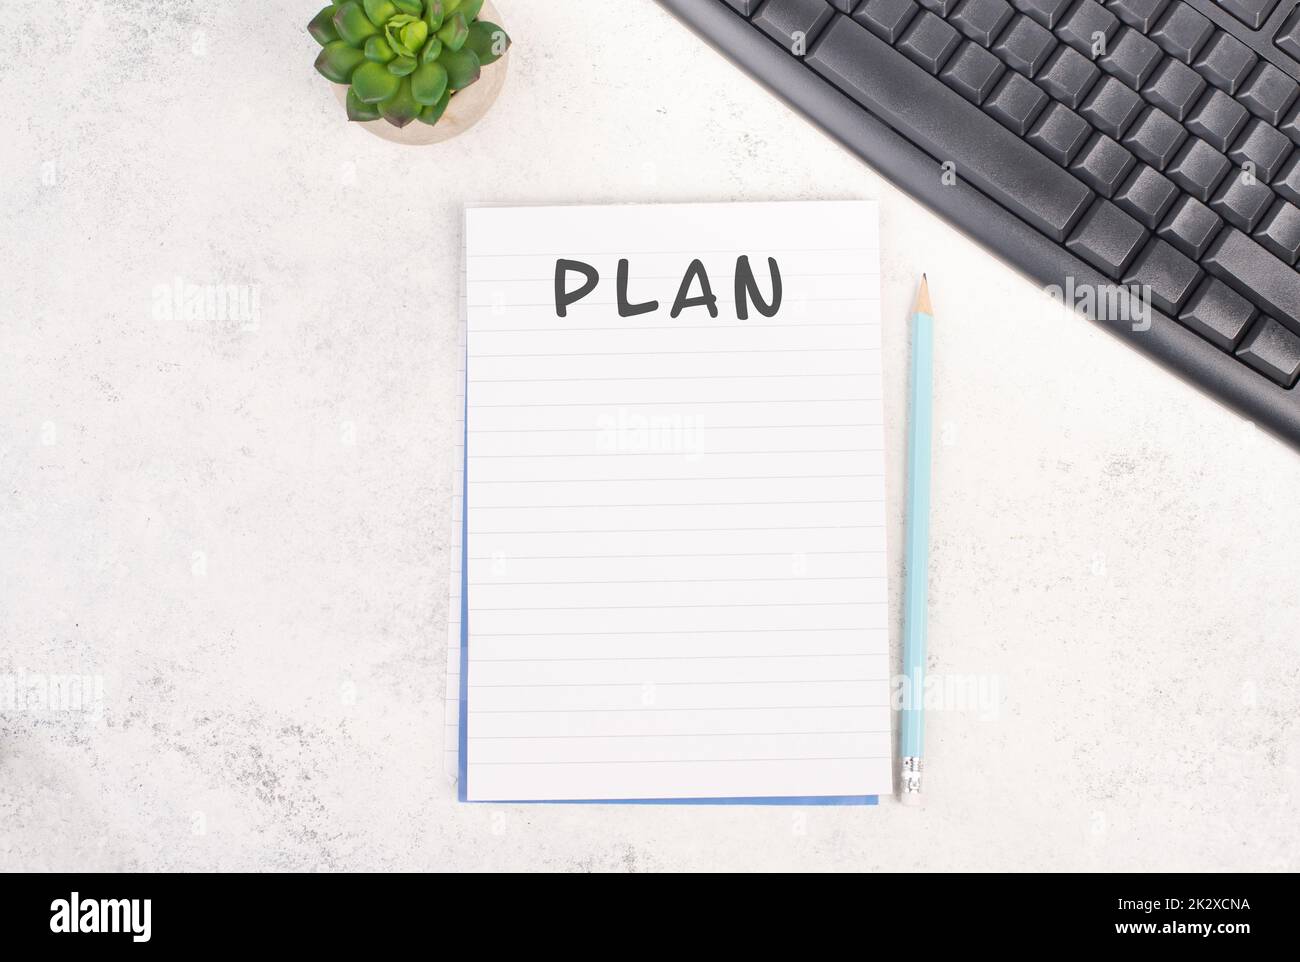 Papier mit dem Wort Plan neben einem Stift, einer Computertastatur und einem Kaktus, strukturierter Hintergrund, Brainstorming für neue Ideen, Schreiben einer Nachricht, Erstellen eines Plans, Schreibtisch im Home Office Stockfoto